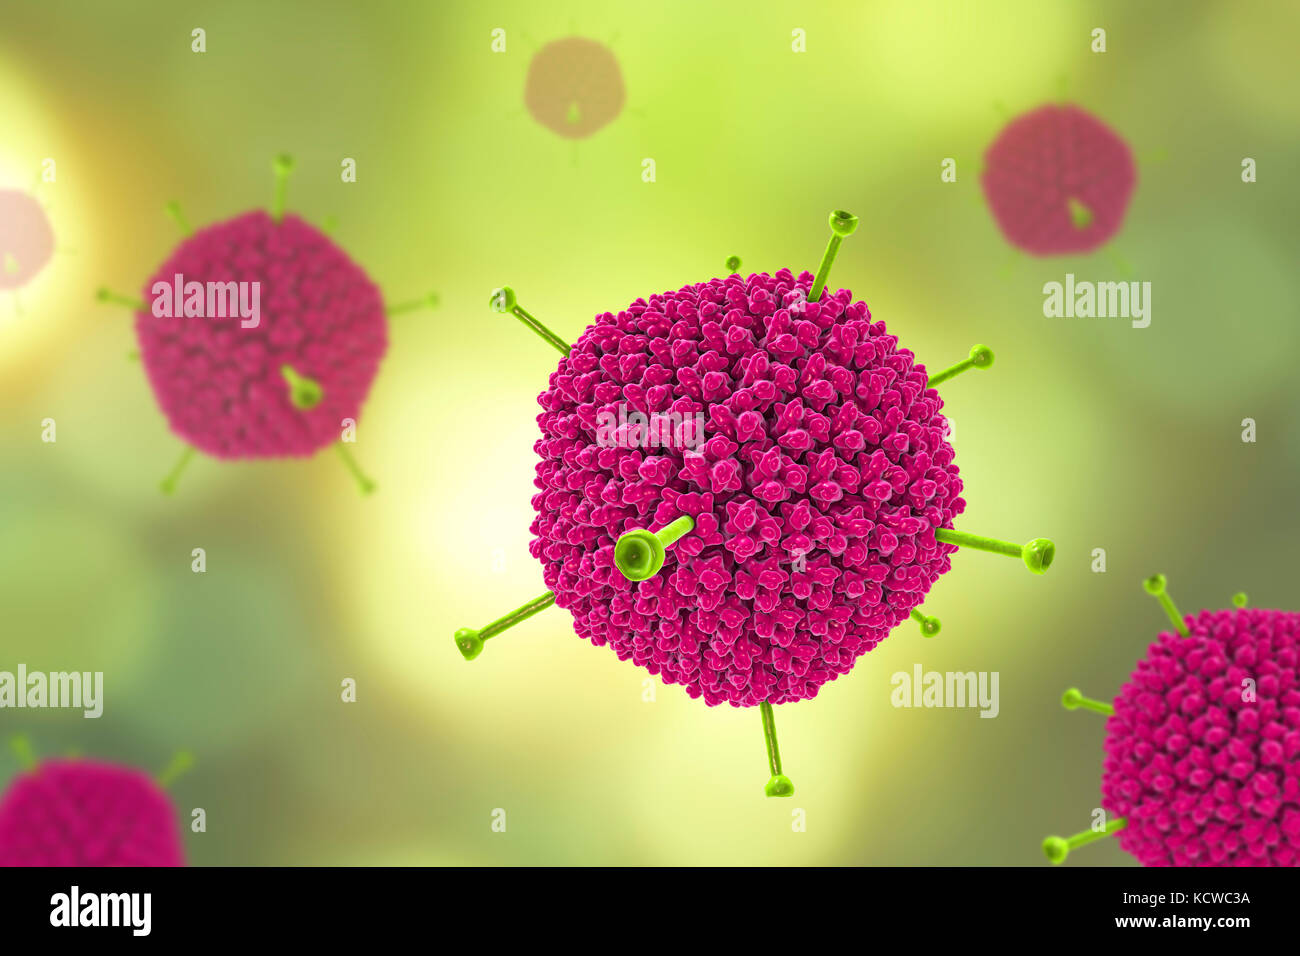 Gli adenovirus. Computer illustrazione che mostra la struttura di superficie del virus esterna del rivestimento di proteina (capside). Molti gli adenovirus infettano il tratto respiratorio, causando il raffreddore comune di sintomi simili, e infettare anche gli occhi e gut, in particolare per i bambini. Il verde delle sporgenze sono note come fibre di pentone e si trovano in corrispondenza di ciascuno dei vertici 12 del capside. Ciascuna fibra è ribaltata con proteine che permettono al virus di entrare nella sua cella di bersaglio. Foto Stock